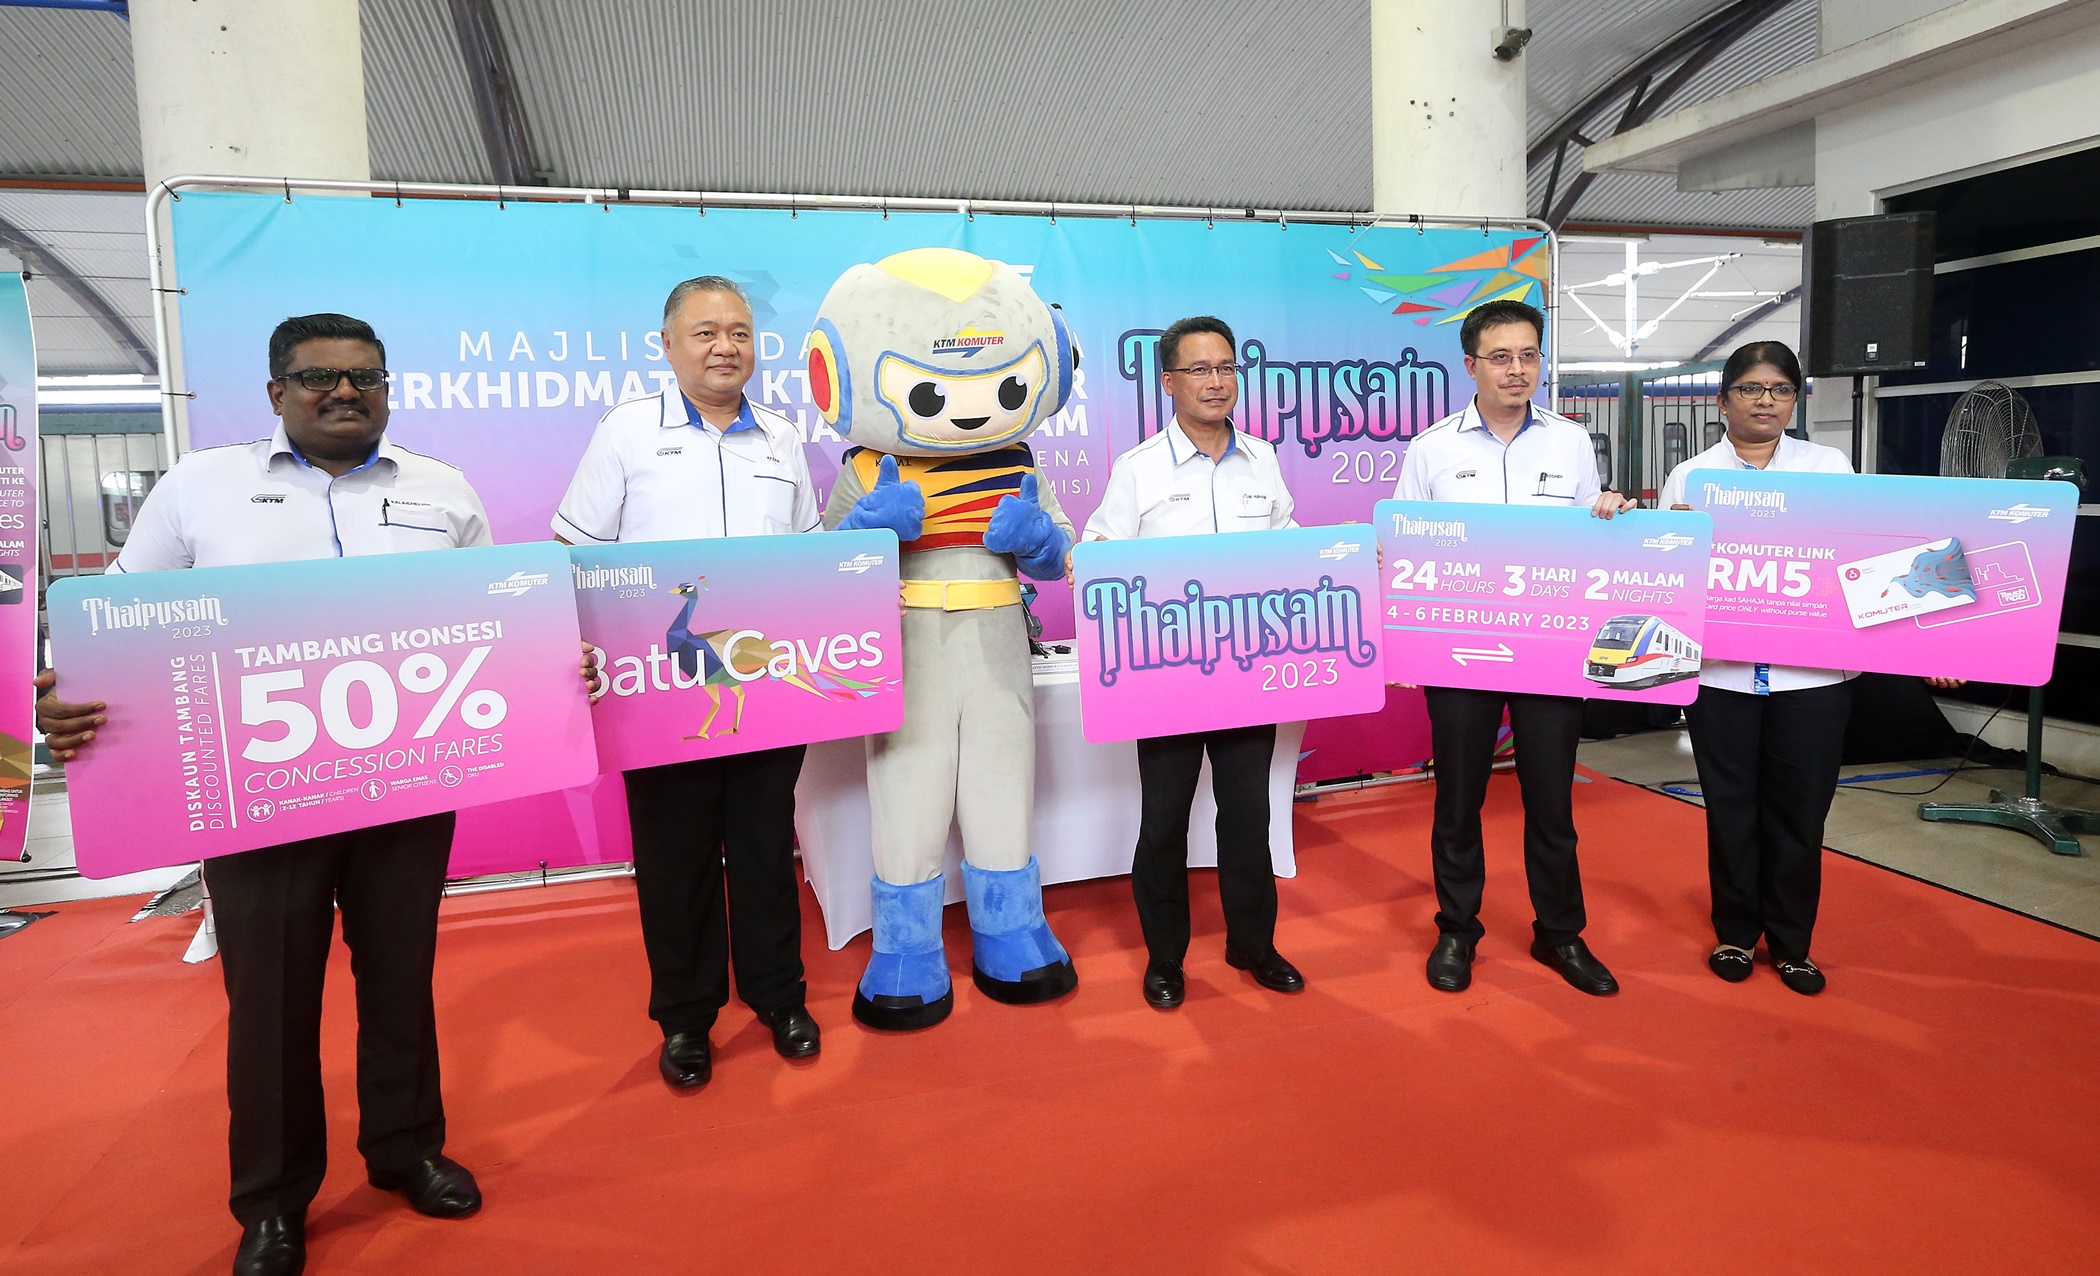 马来亚铁道公司宣布增加大宝森节时的电动火车班次